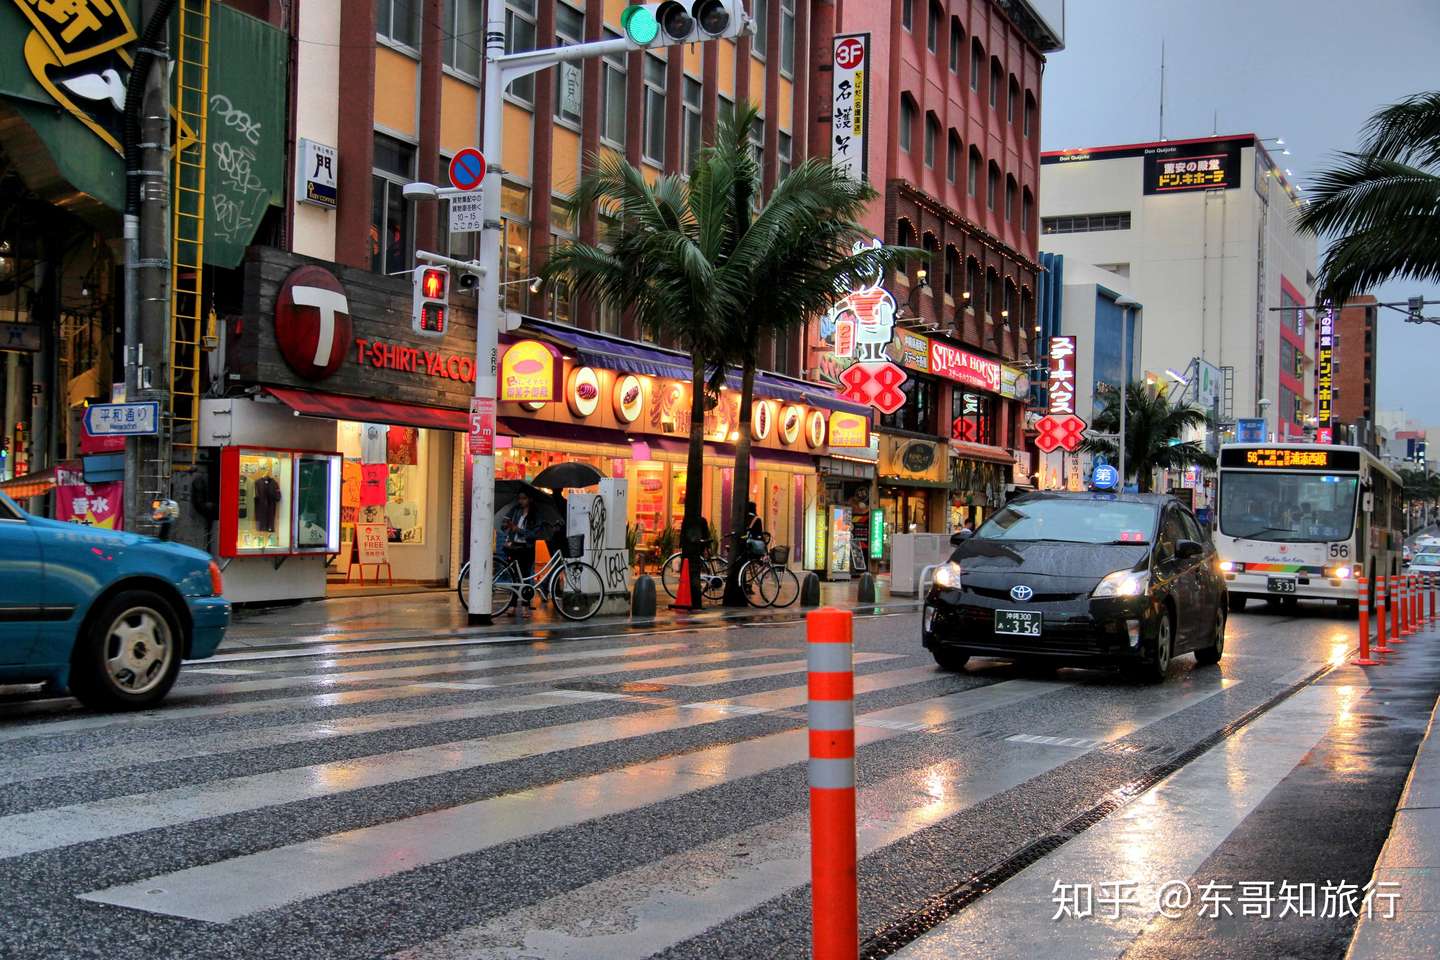 日本冲绳5天包车旅游线路规划 第一次去跟着走就行了 知乎